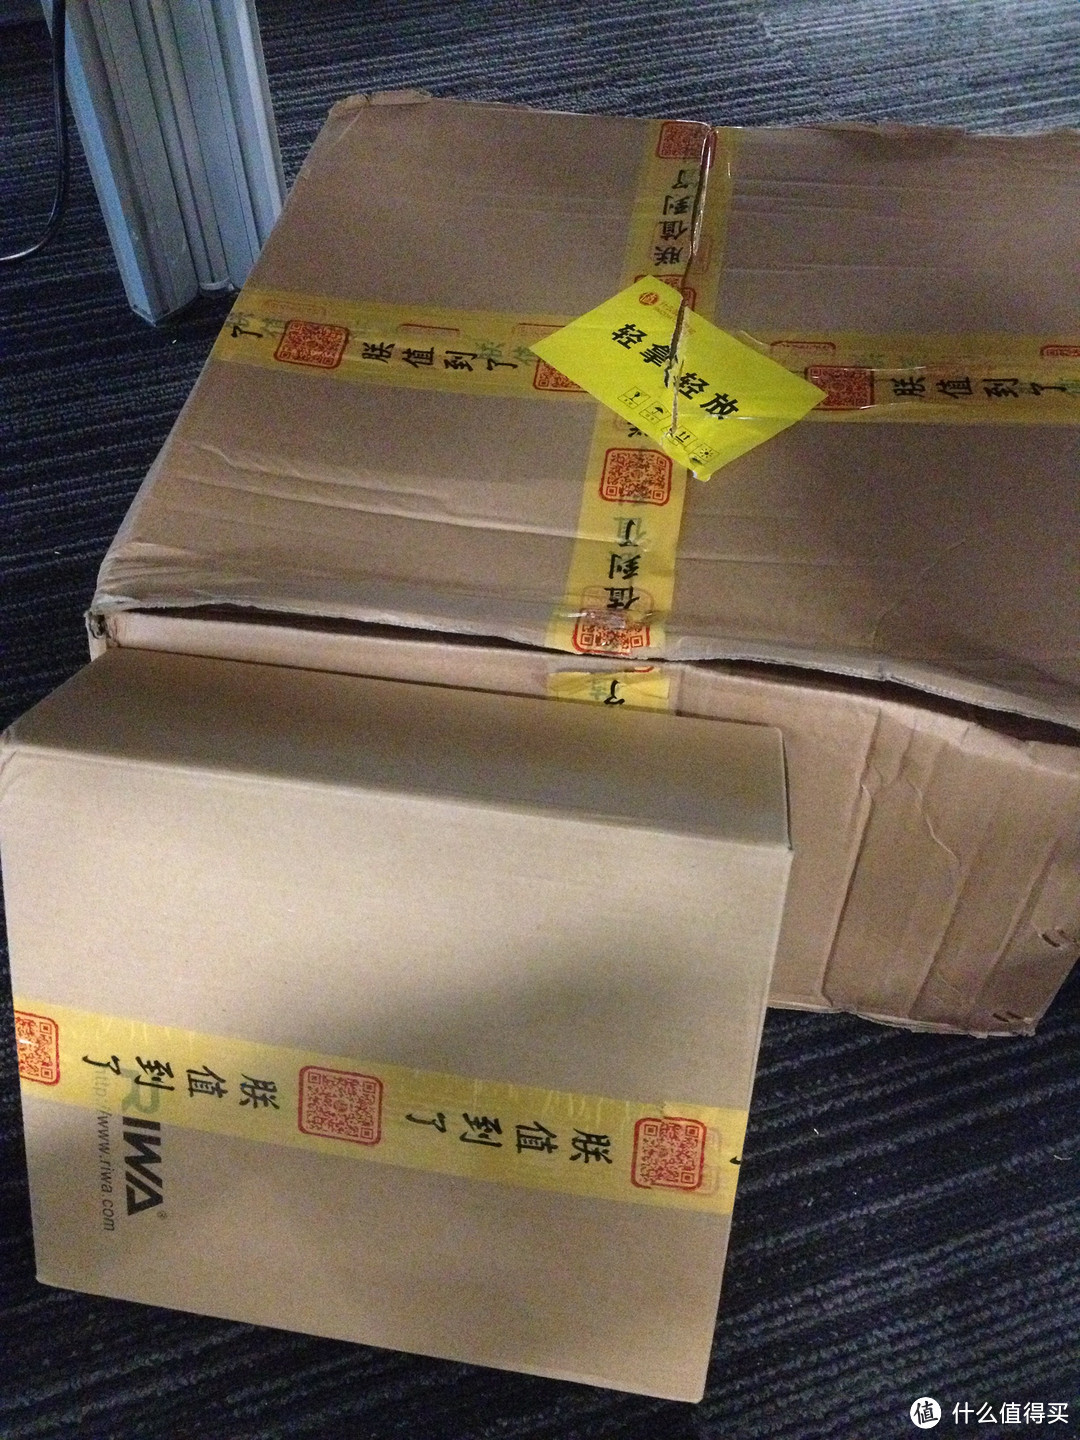 这么大的箱子包裹这么小的盒子不放气垫真的大丈夫？